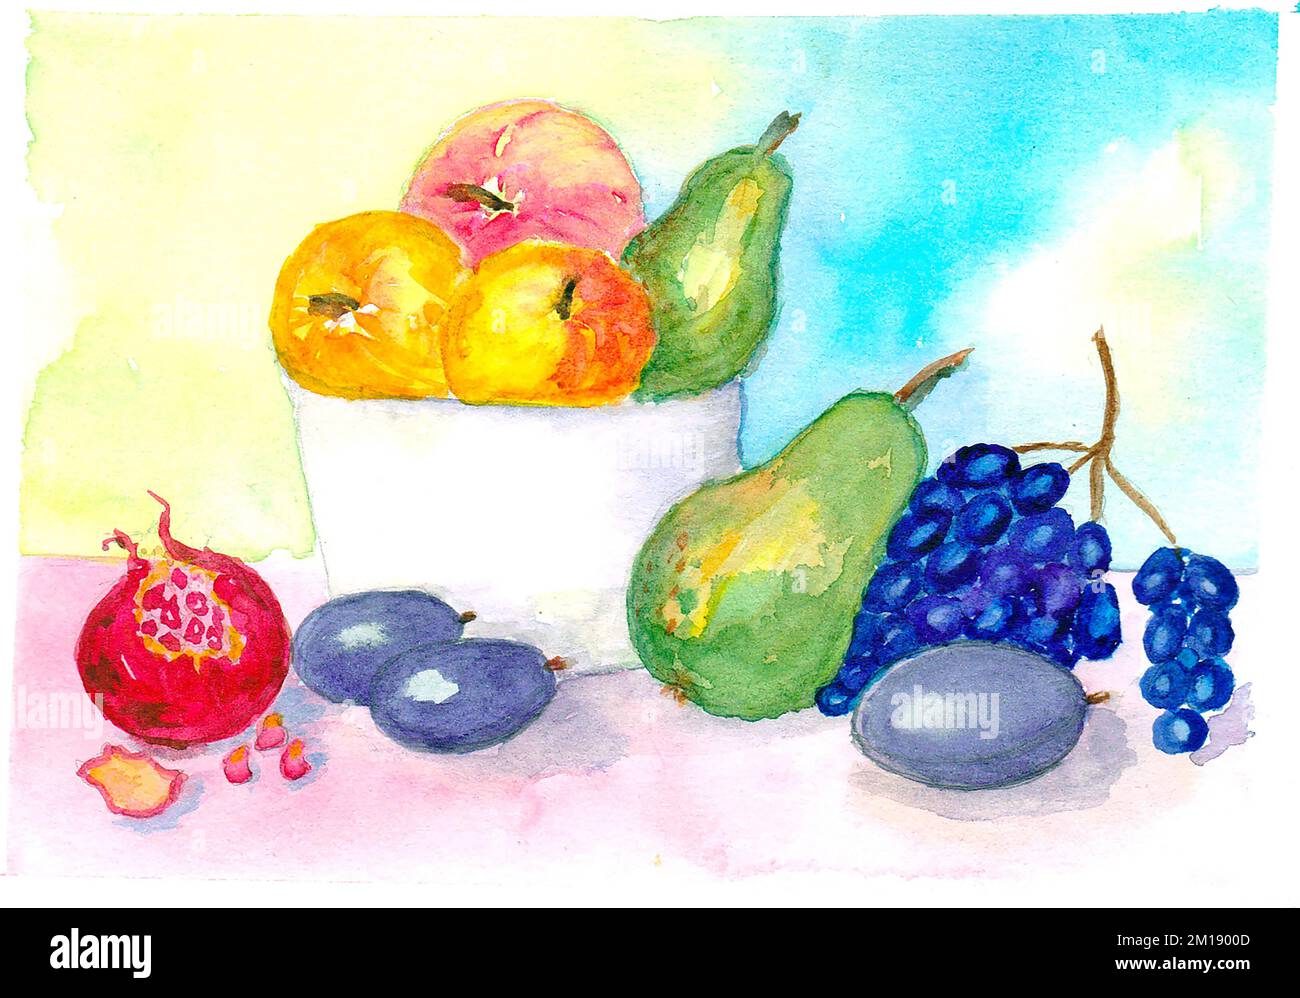 Encore la vie avec des fruits en aquarelle. Prune de fruits, poire, raisin, grenade sur la table. Illustration. Peinture conception faite à la main. Dessiné à la main Banque D'Images